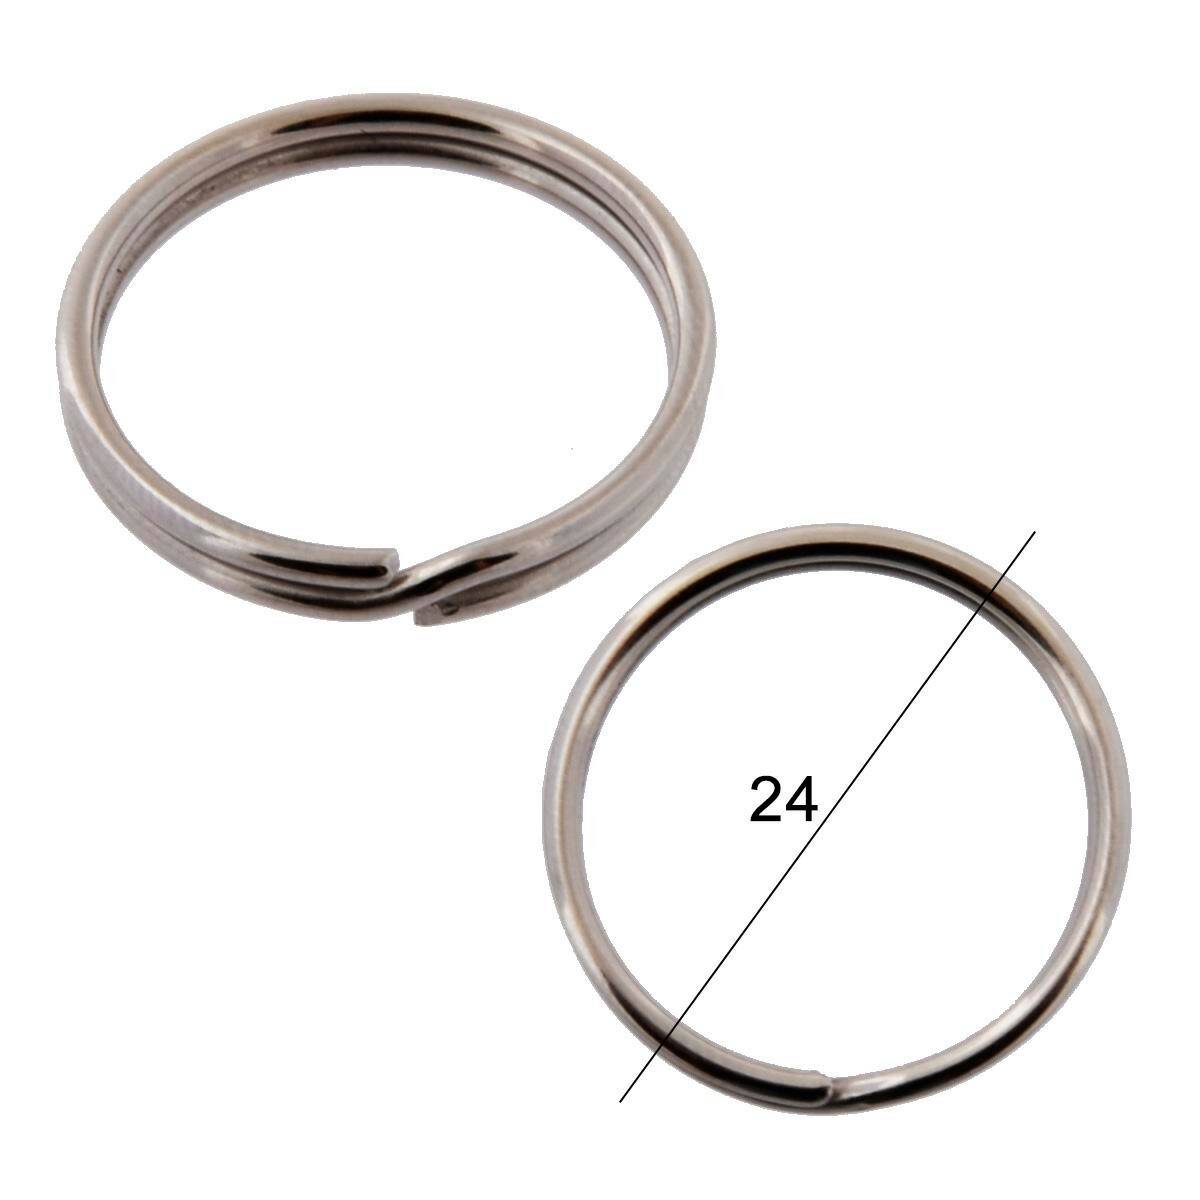 Key rings diameter 24mm